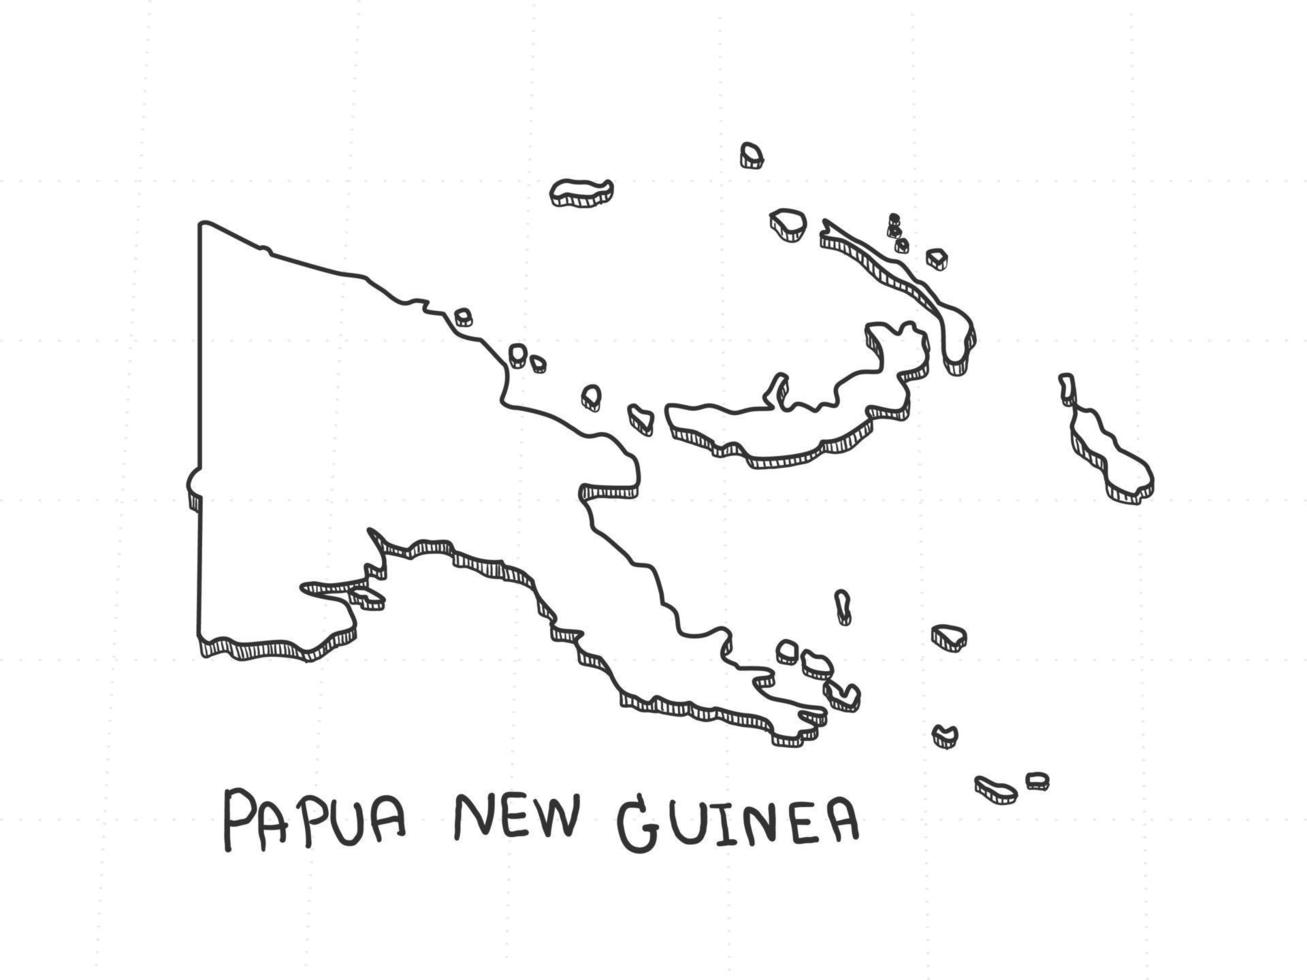 disegnato a mano della mappa 3d della papua nuova guinea su sfondo bianco. vettore